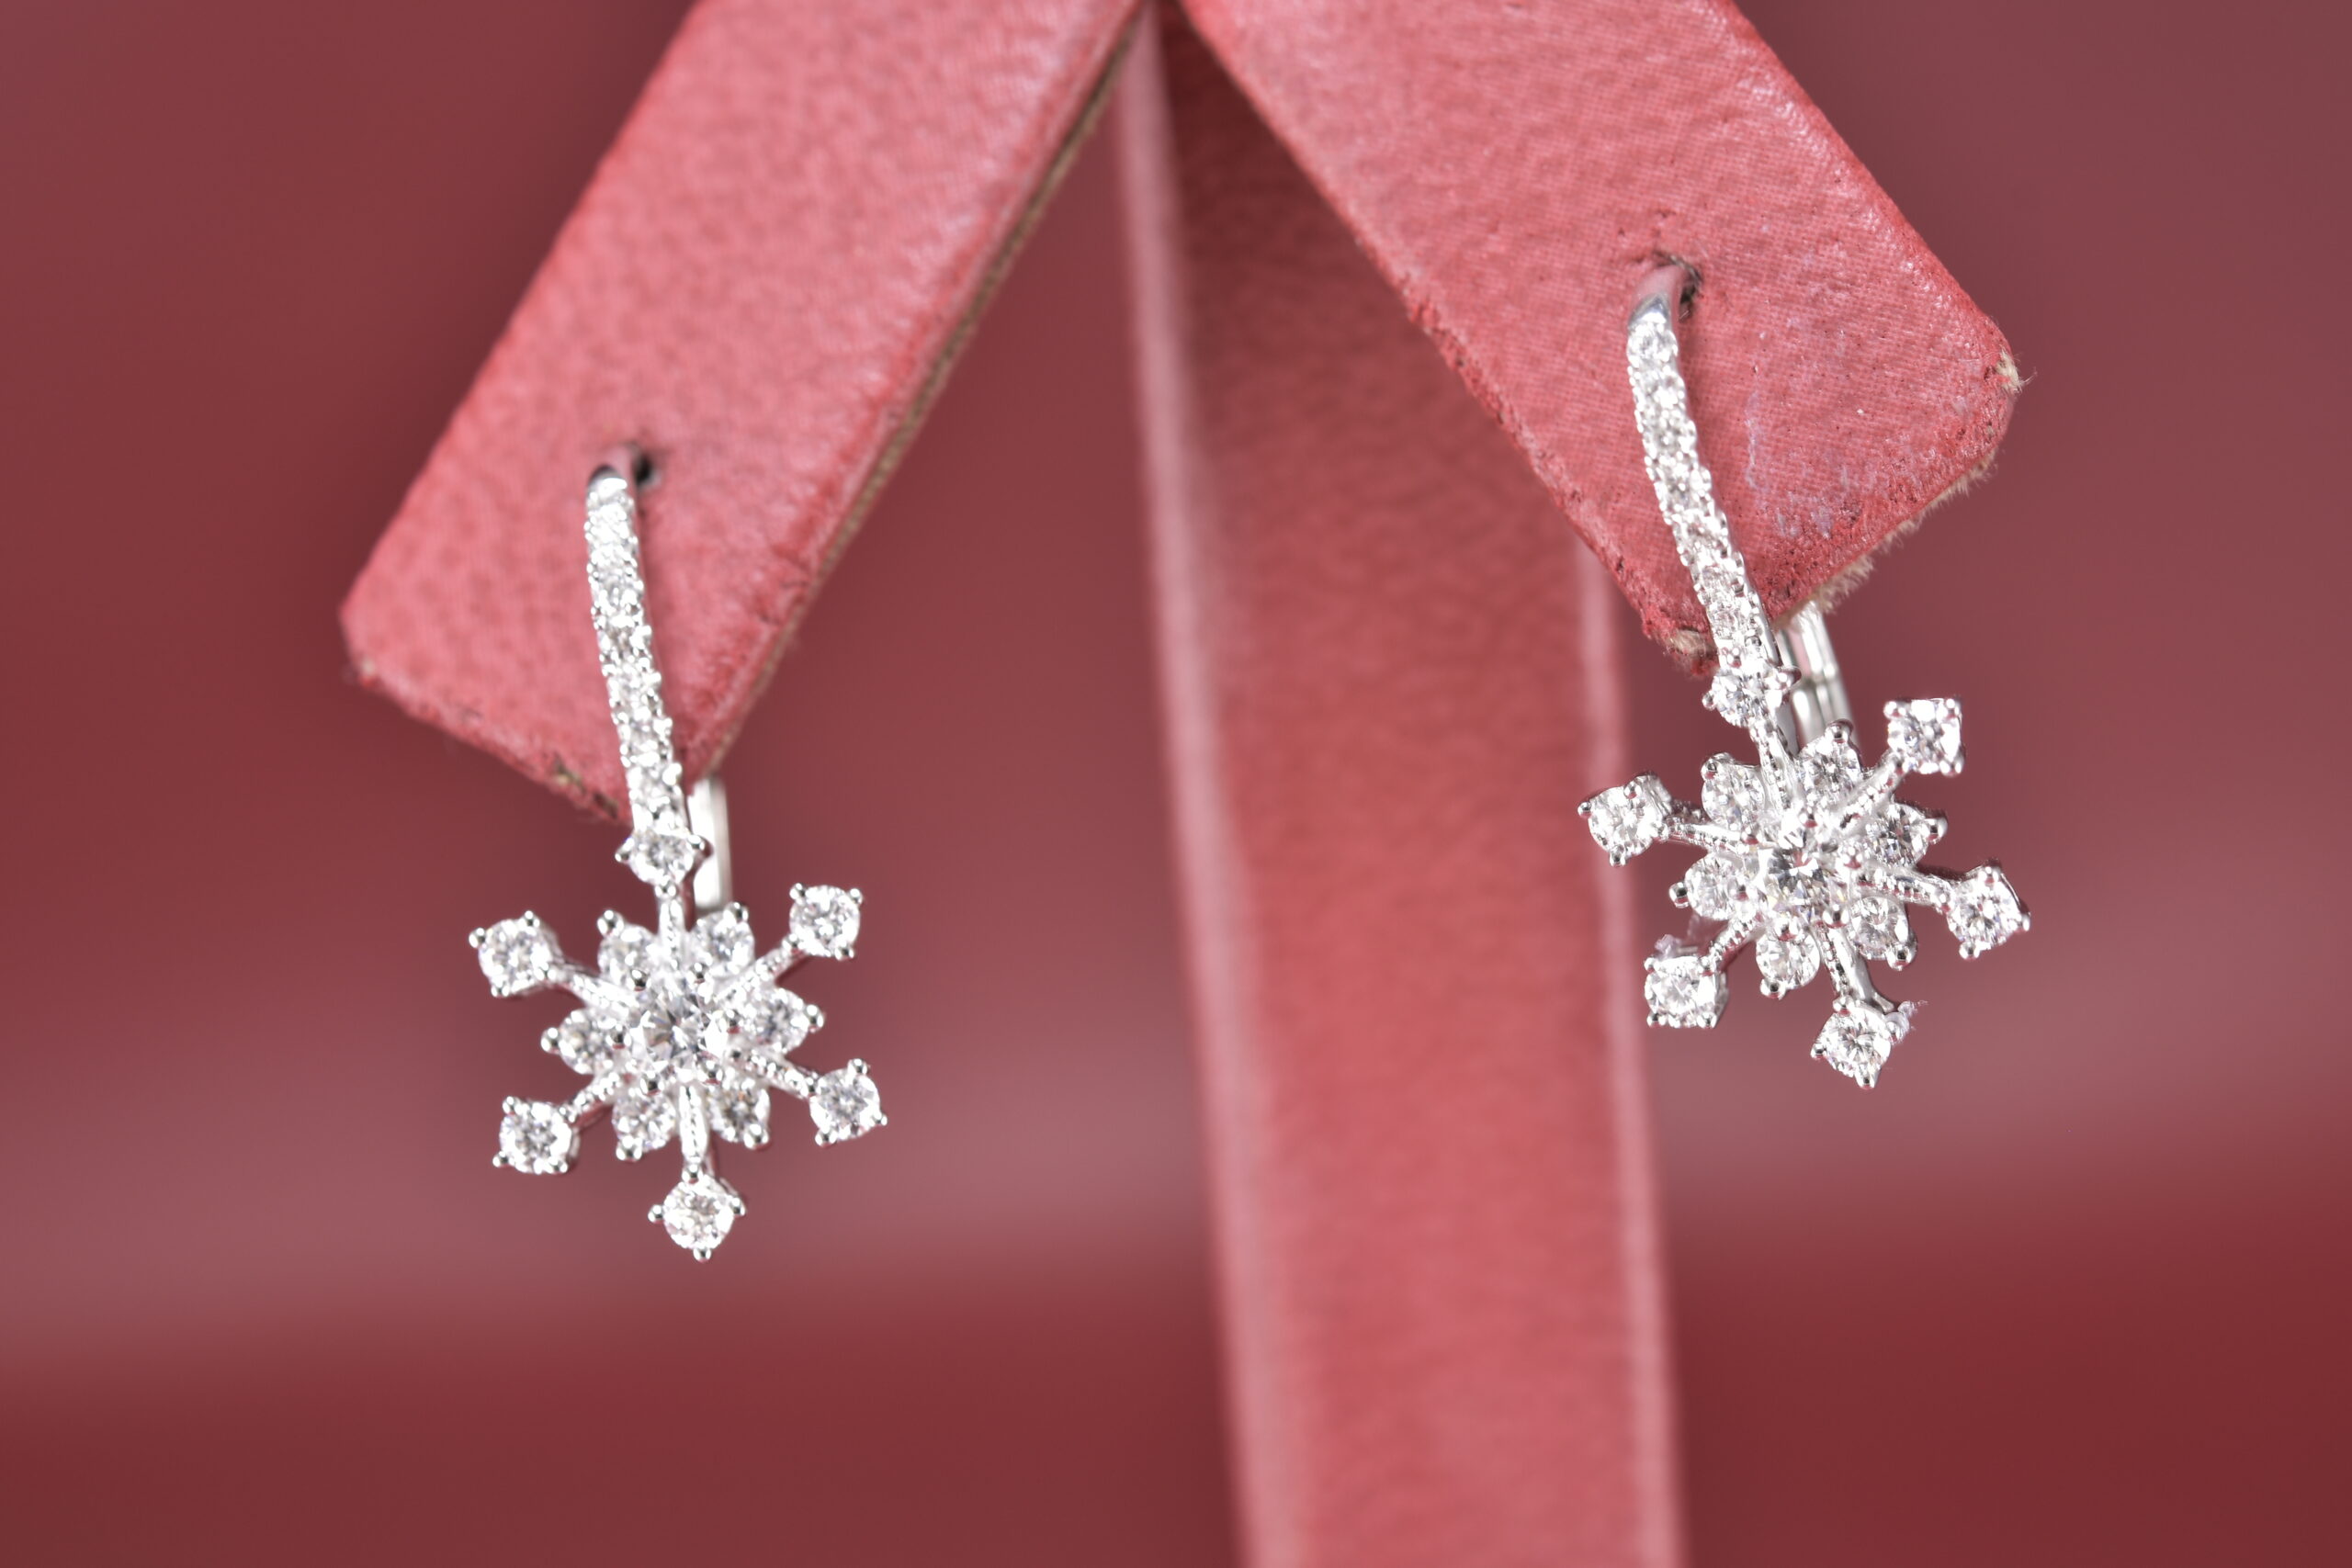 Snowflake Diamond Gems